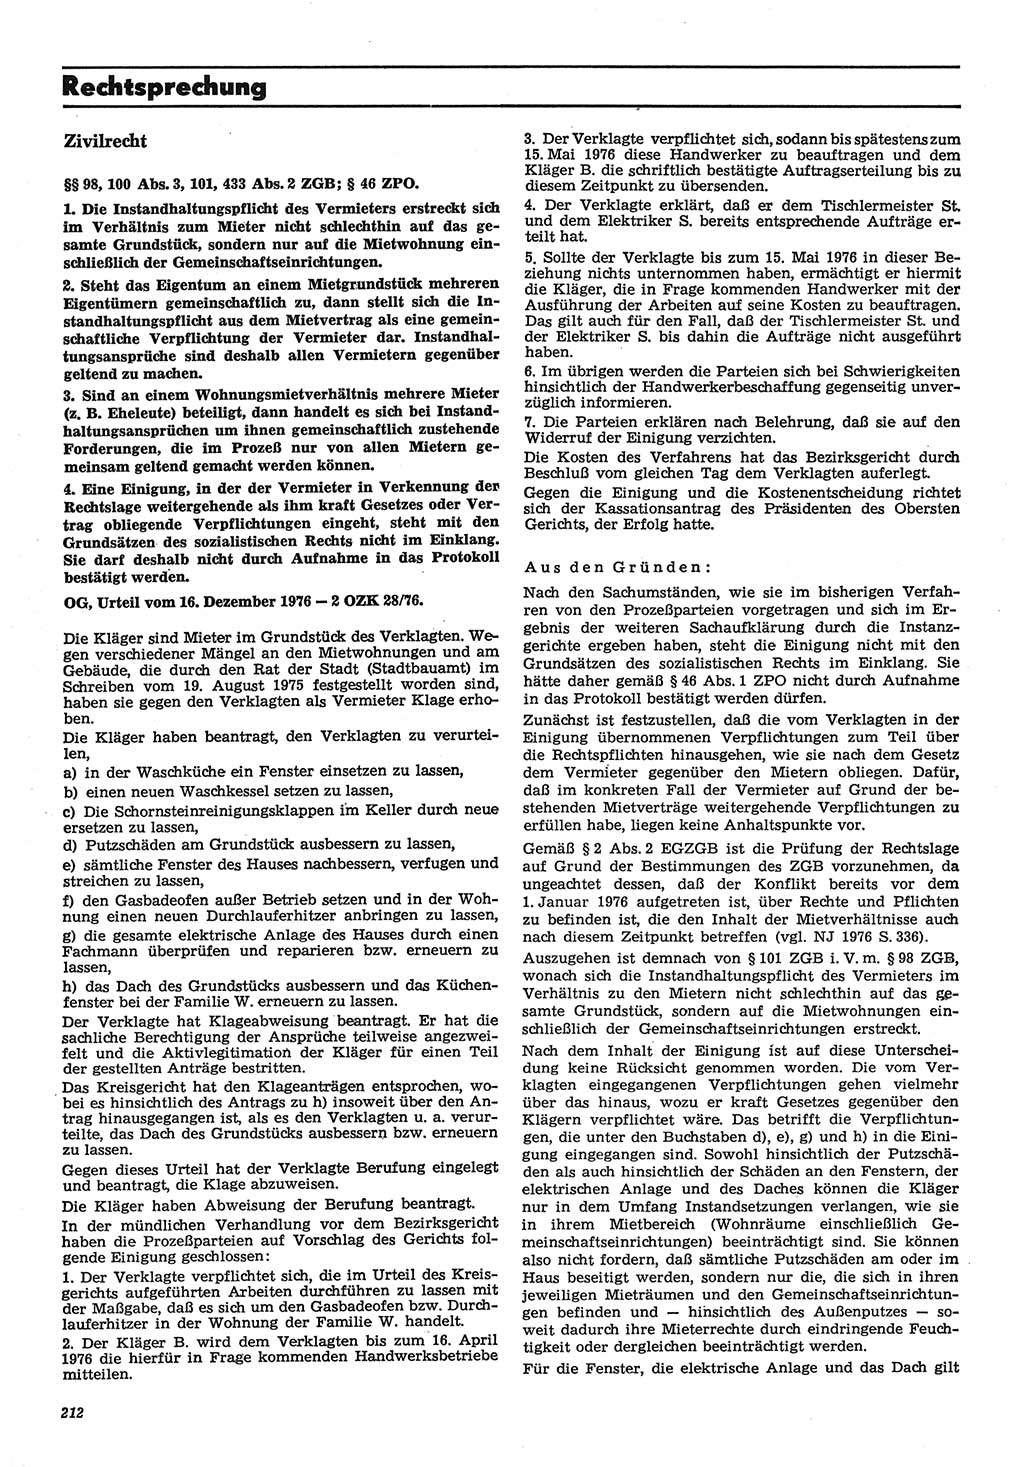 Neue Justiz (NJ), Zeitschrift für Recht und Rechtswissenschaft-Zeitschrift, sozialistisches Recht und Gesetzlichkeit, 31. Jahrgang 1977, Seite 212 (NJ DDR 1977, S. 212)